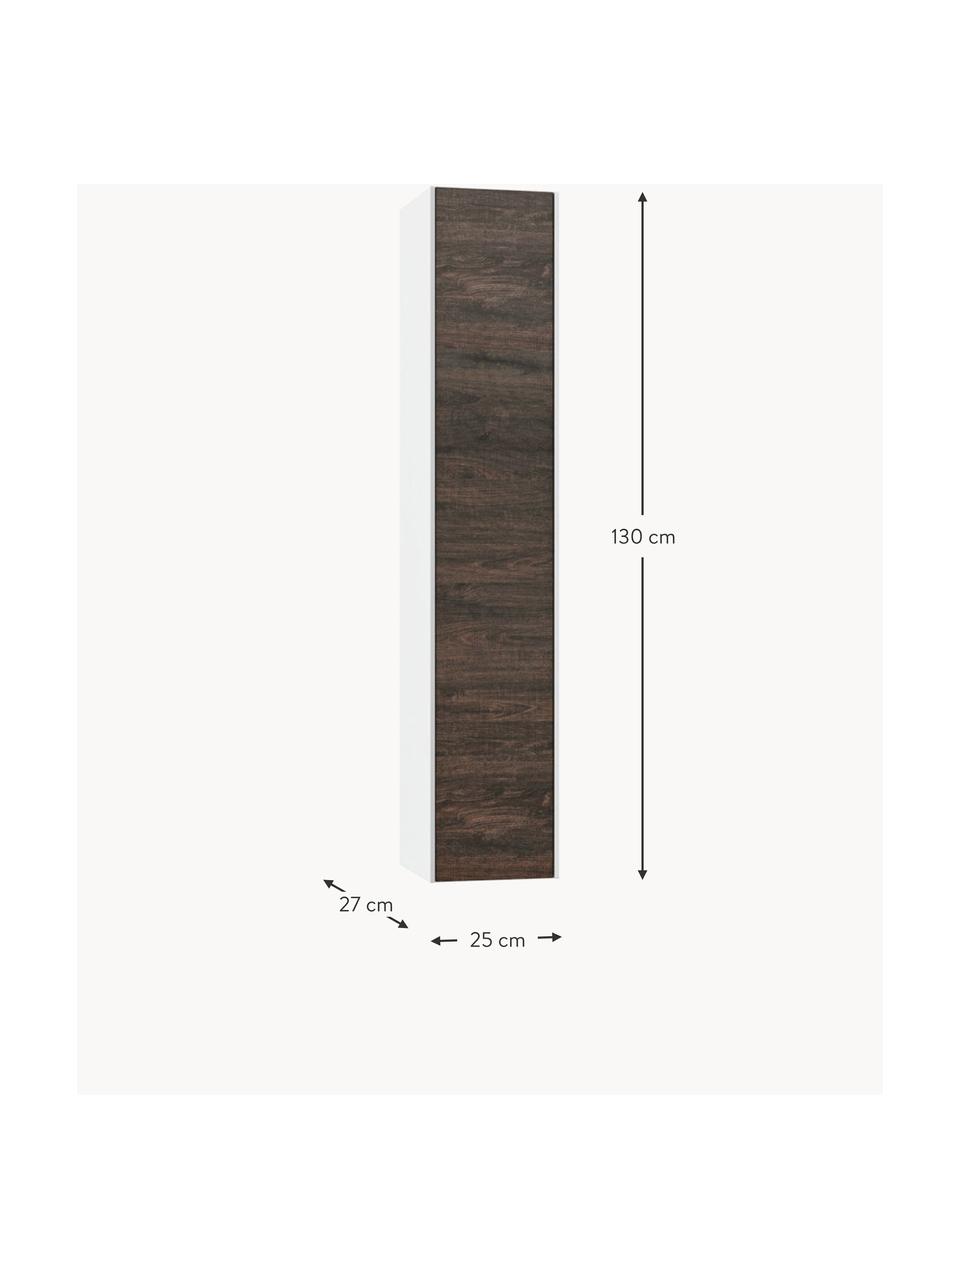 Vysoká koupelnová skříňka Ago, Š 25 cm, Vzhled jasanového dřeva, bílá, Š 25 cm, V 130 cm